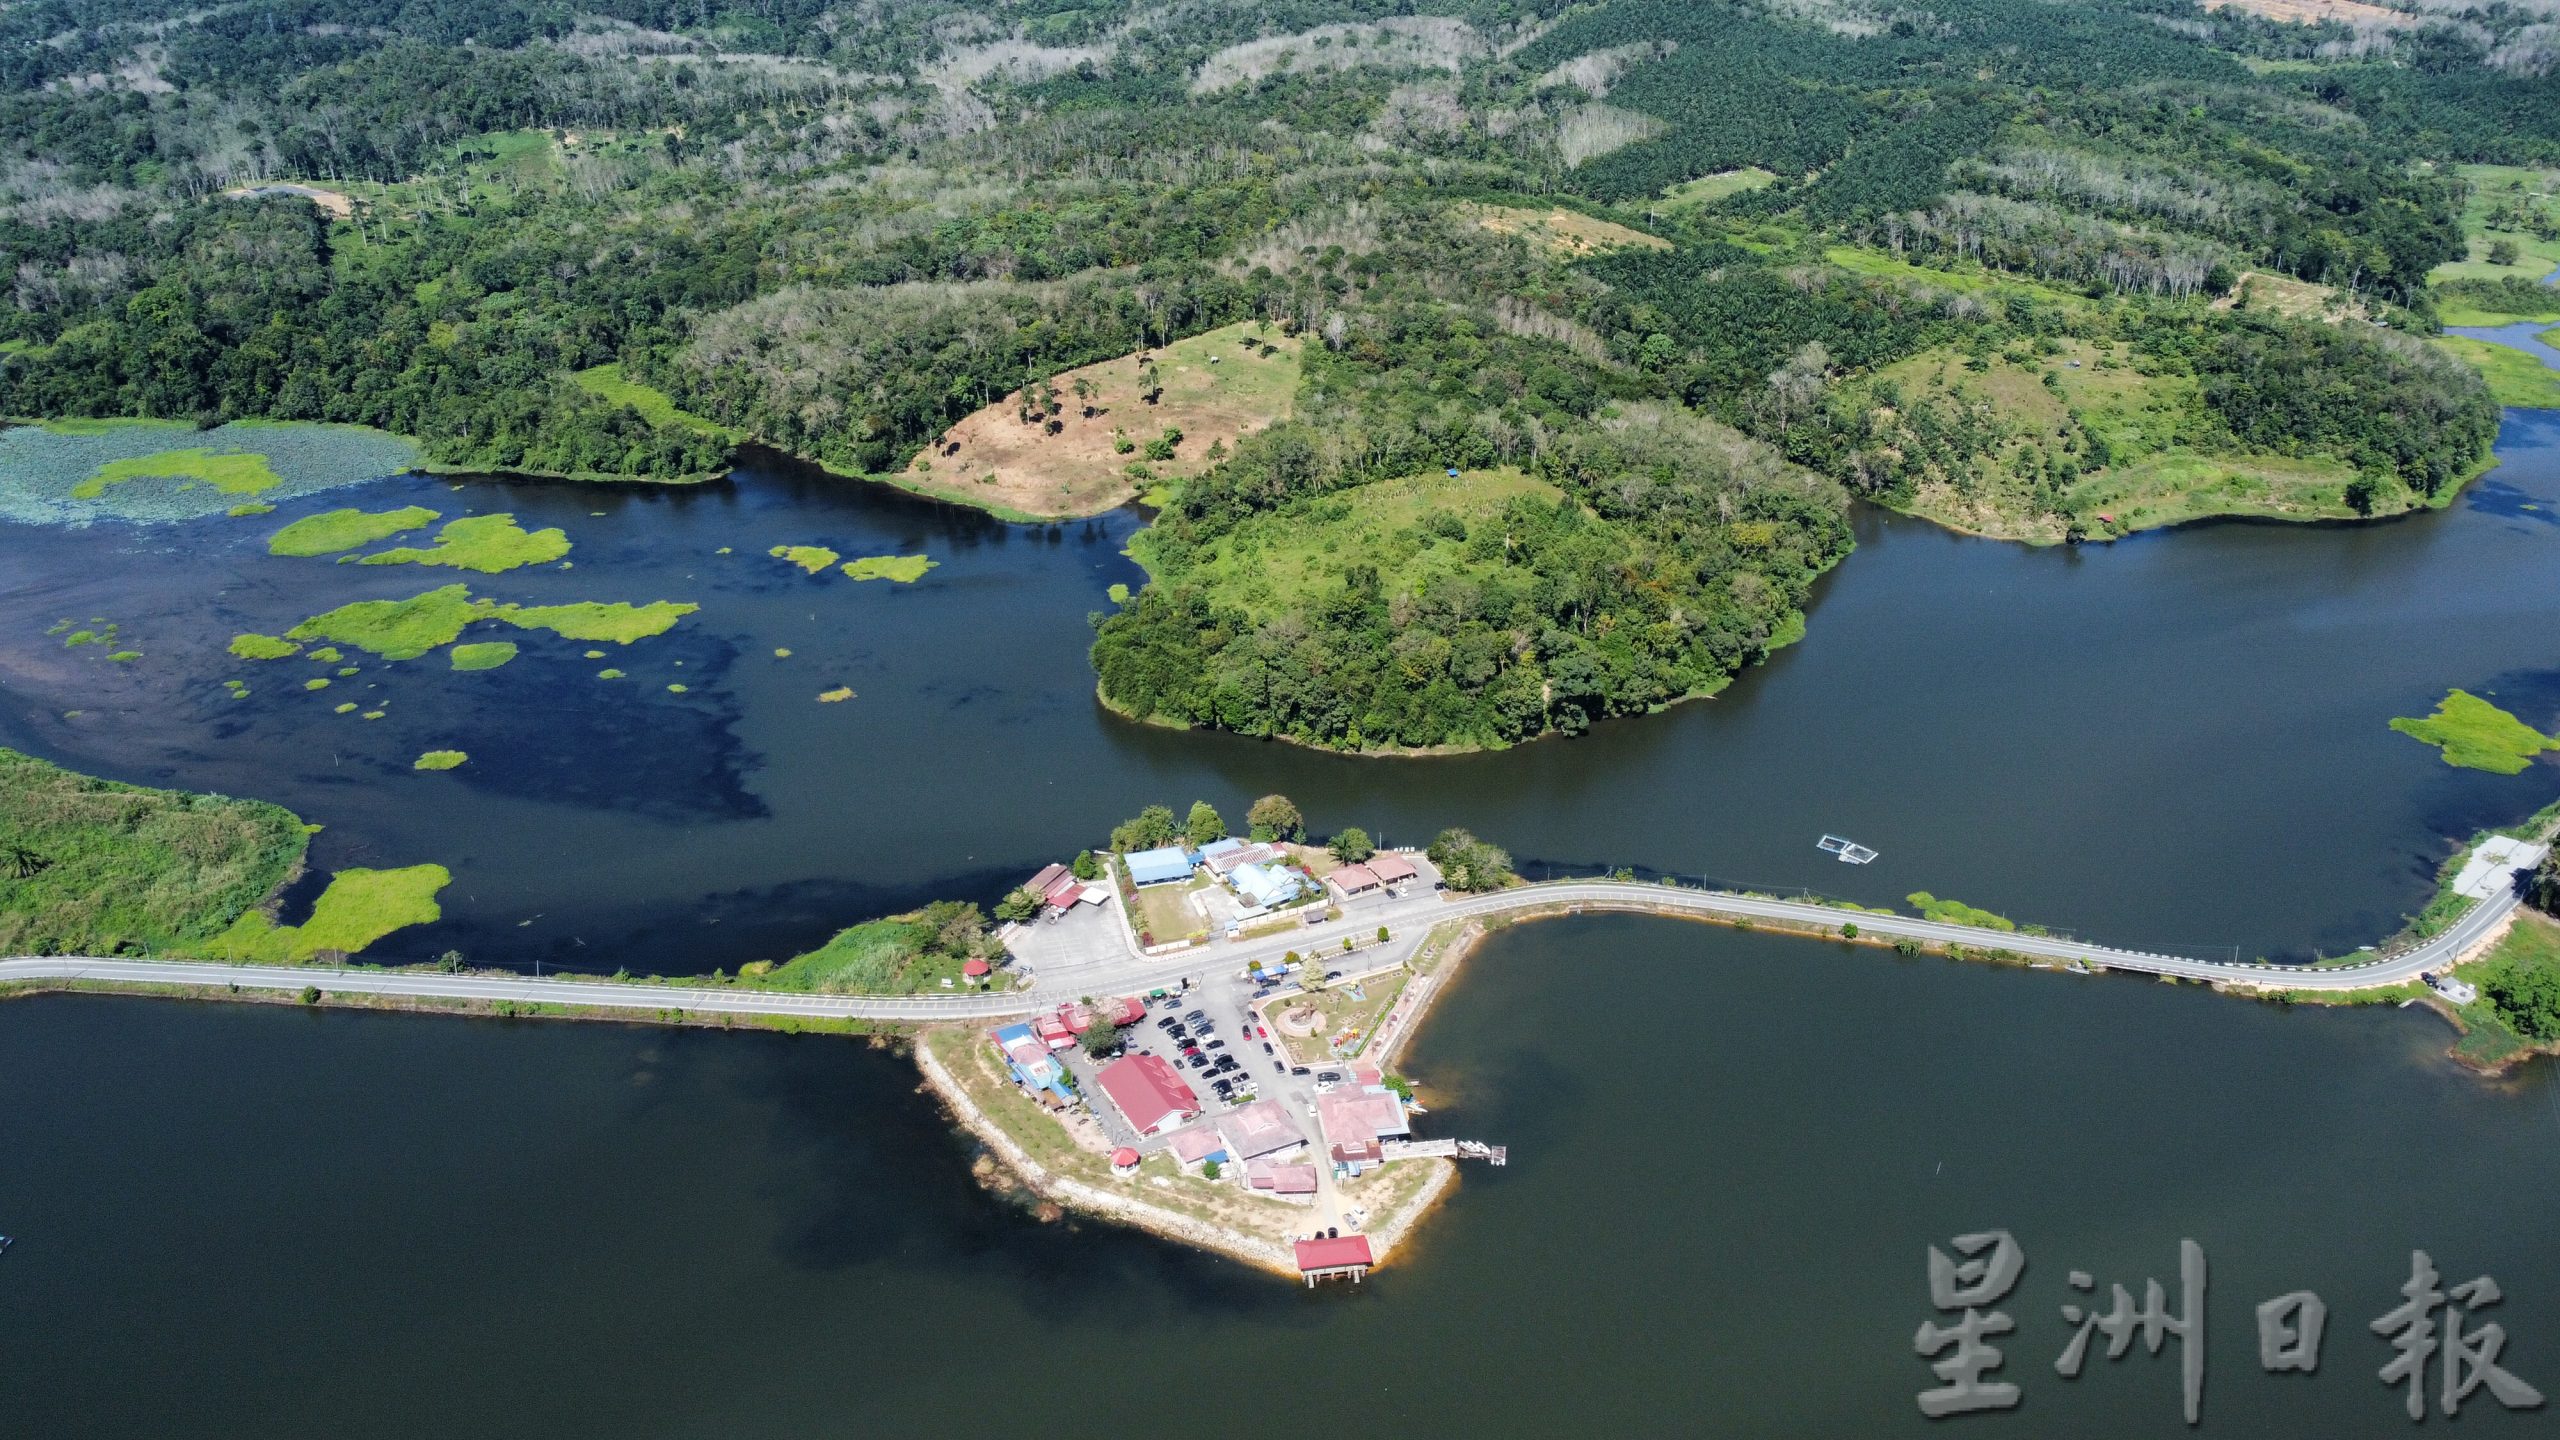 拉班湖或获得霹州政府重点发展成为旅游休闲胜地